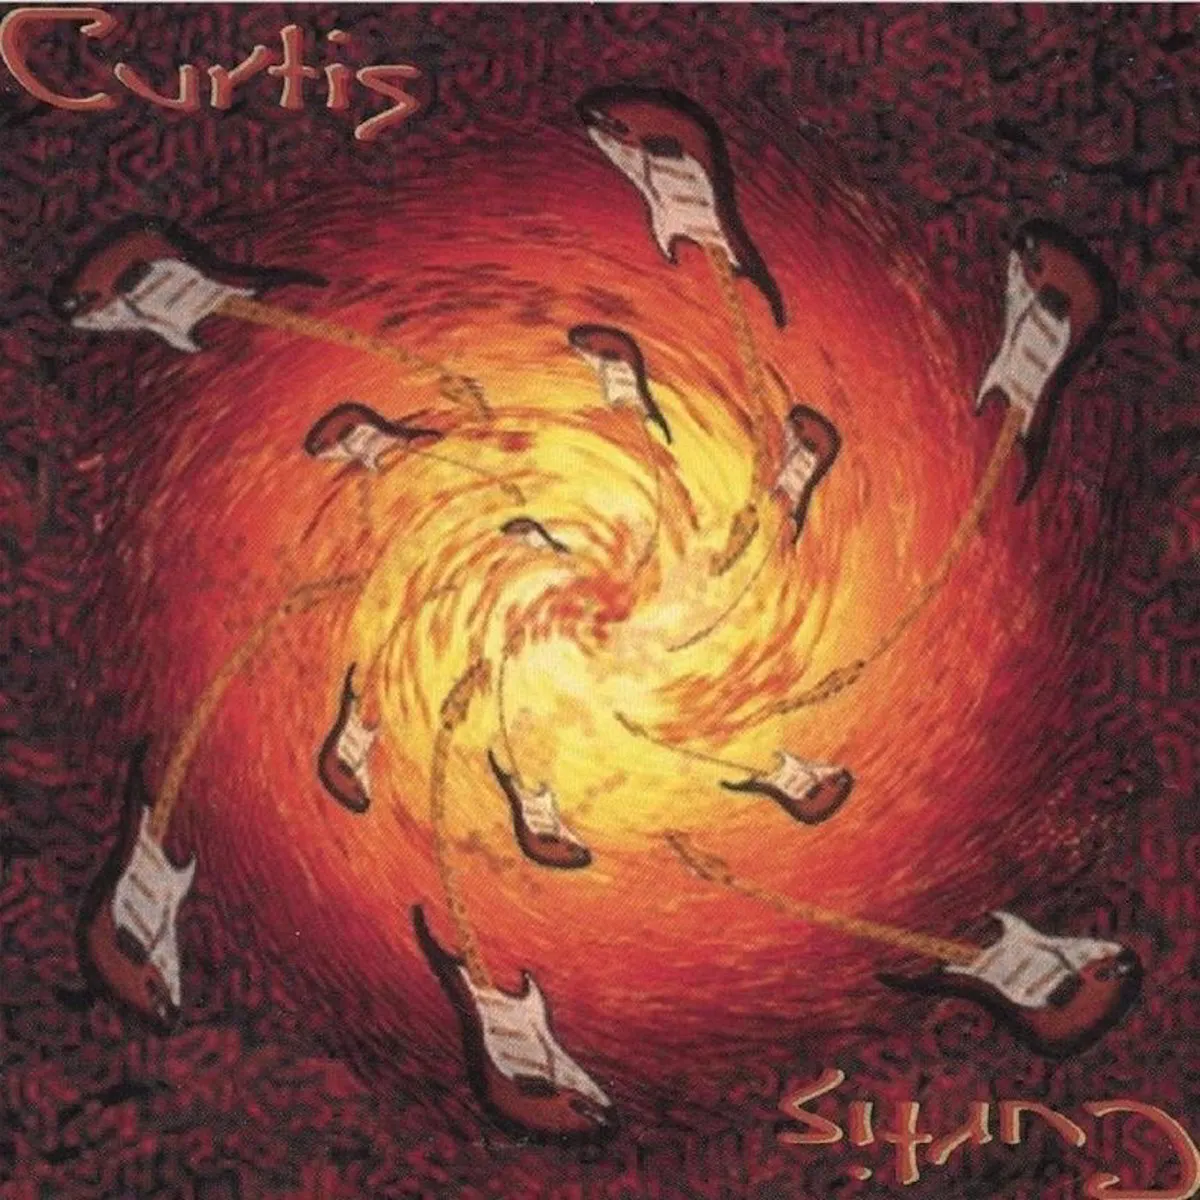 Curtis - CD